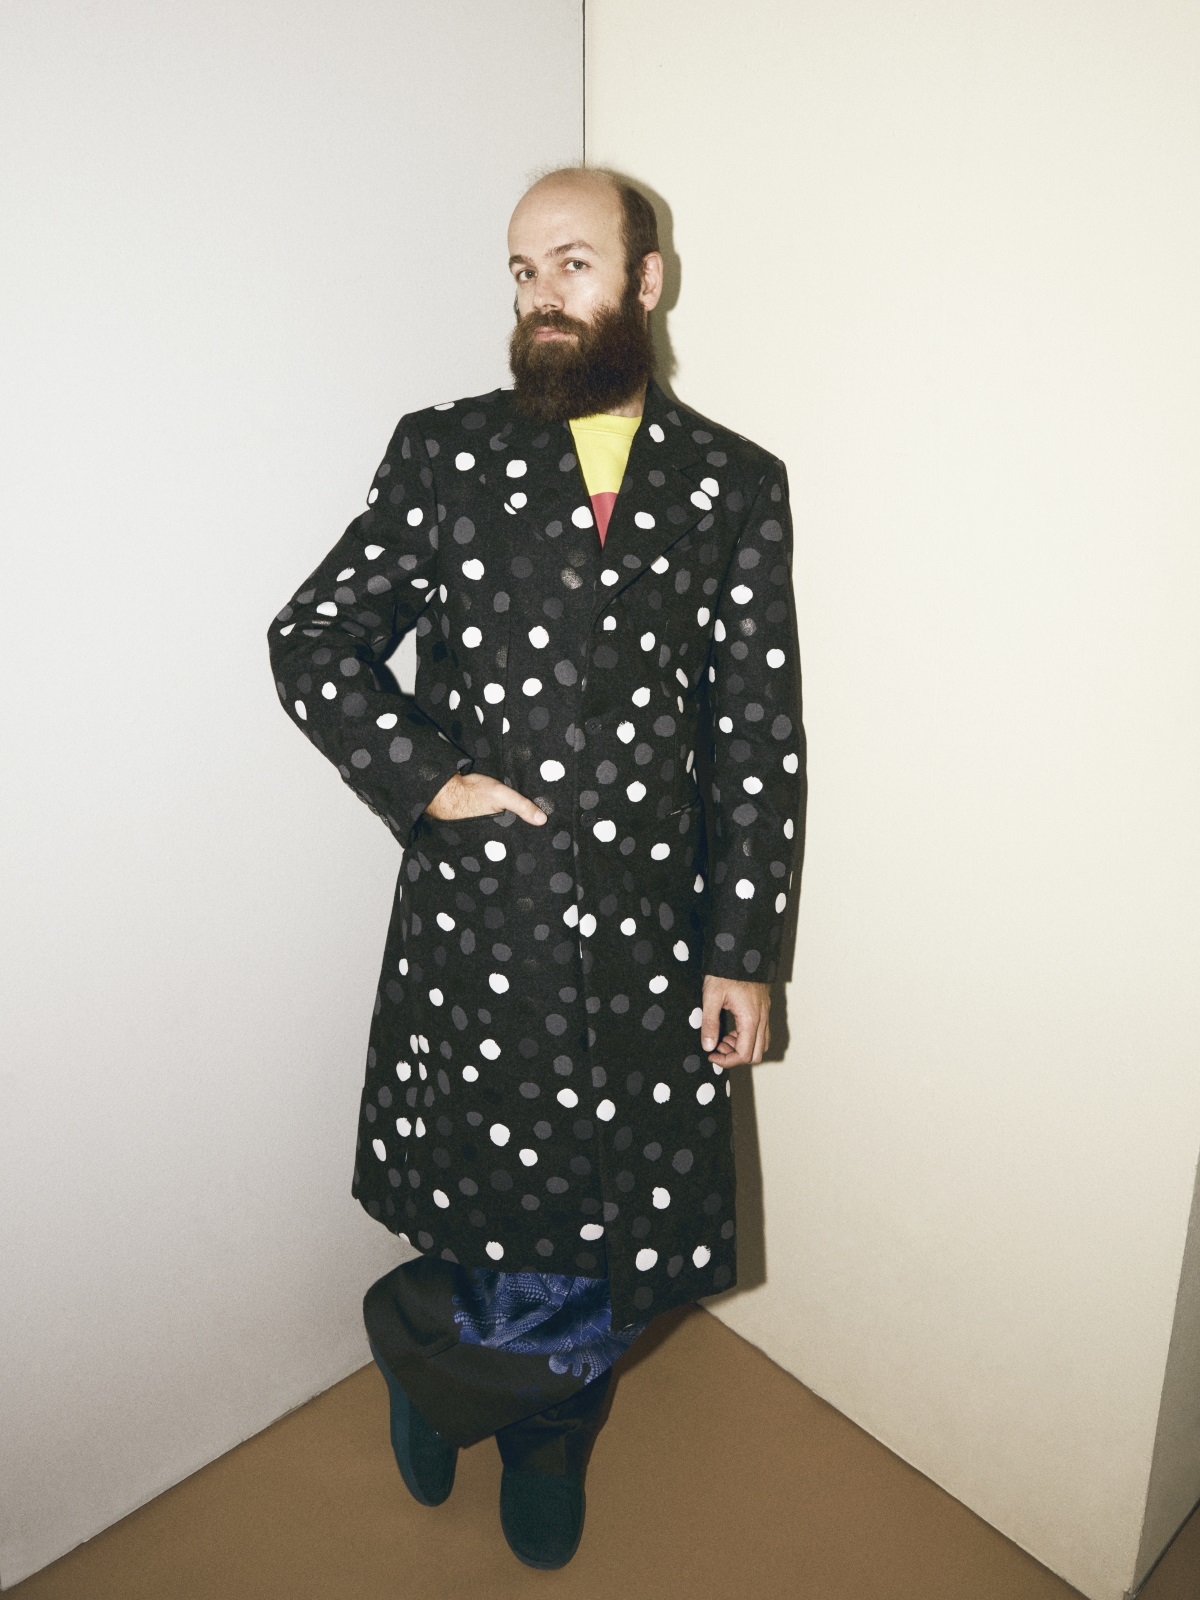 Tristán lleva abrigo Painted Dots y pantalón con estampado psicodélico de la colección Louis Vuitton x Yayoi Kusama. El jersey de Rothko y las deportivas son de Tristán.